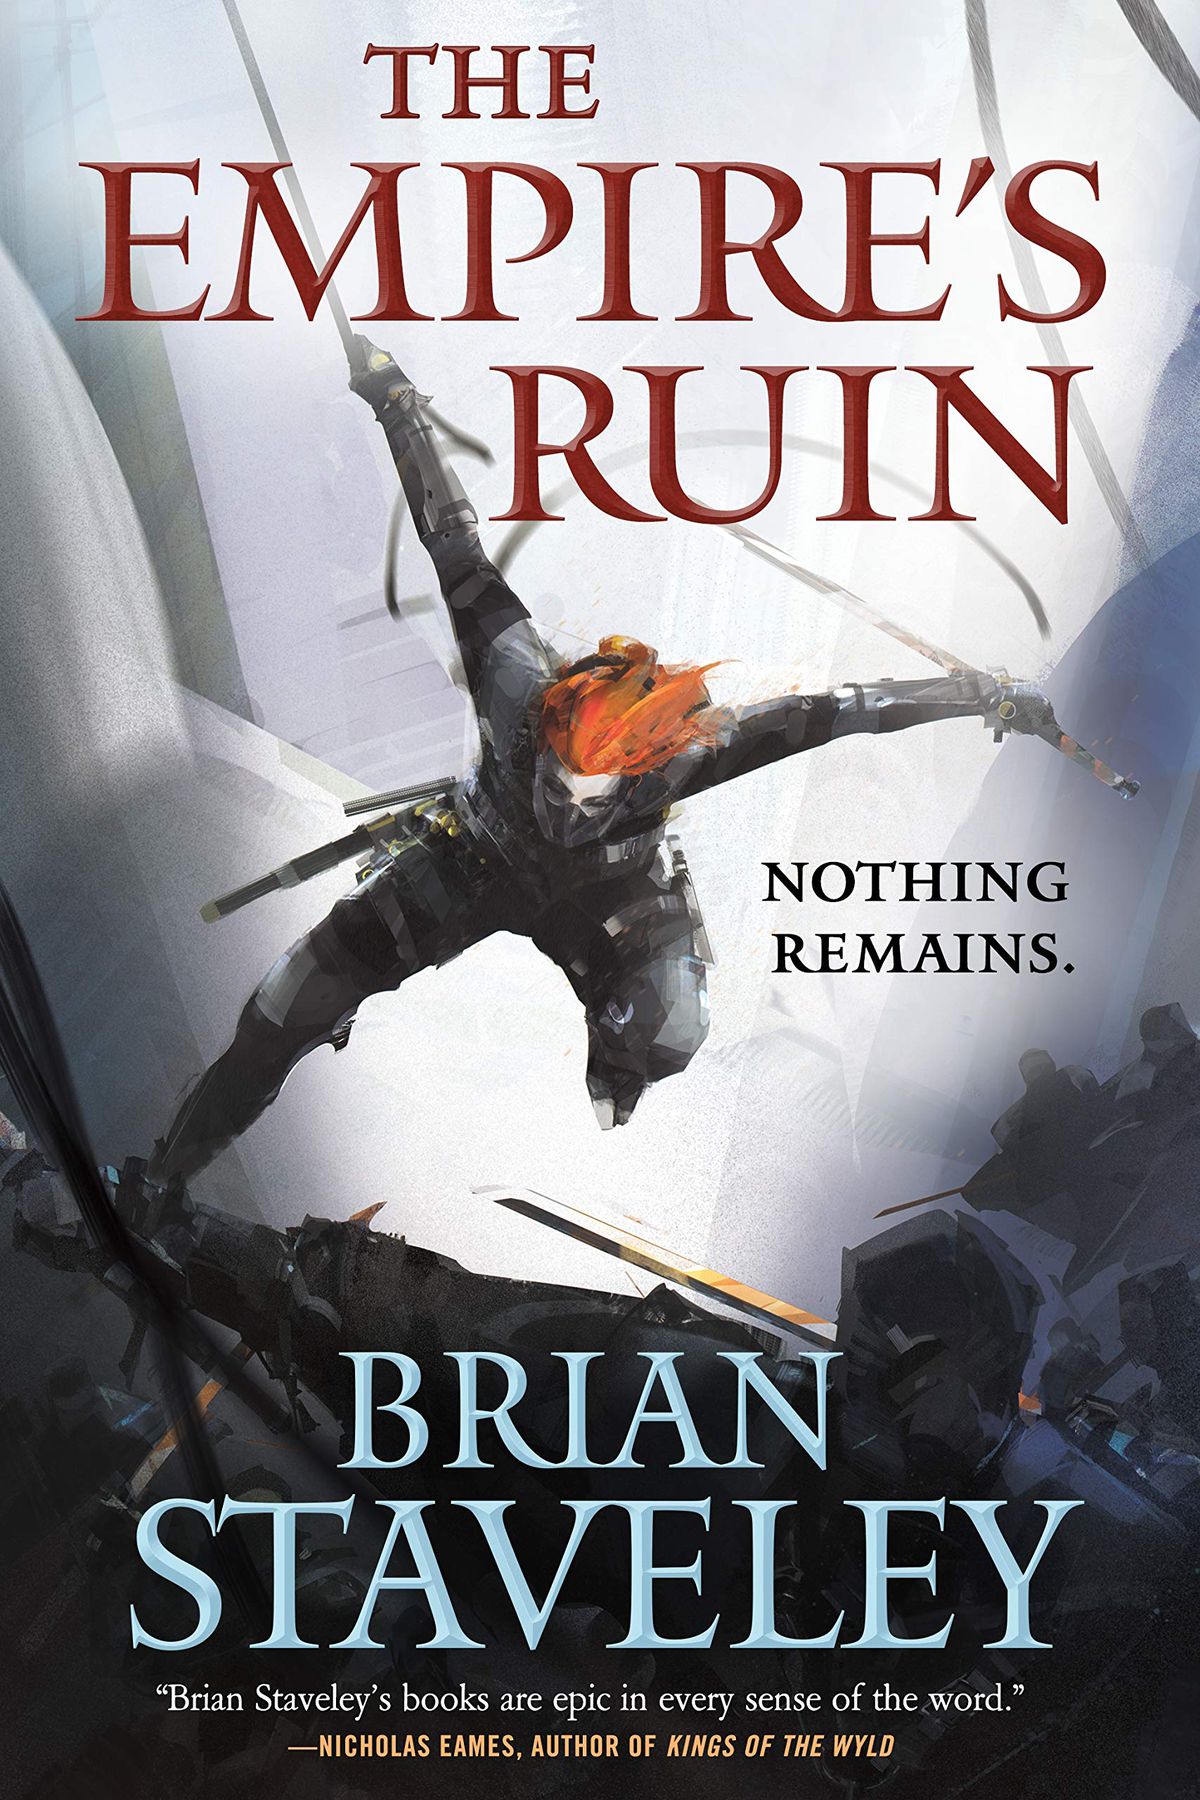 The Empire’s Ruin book cover